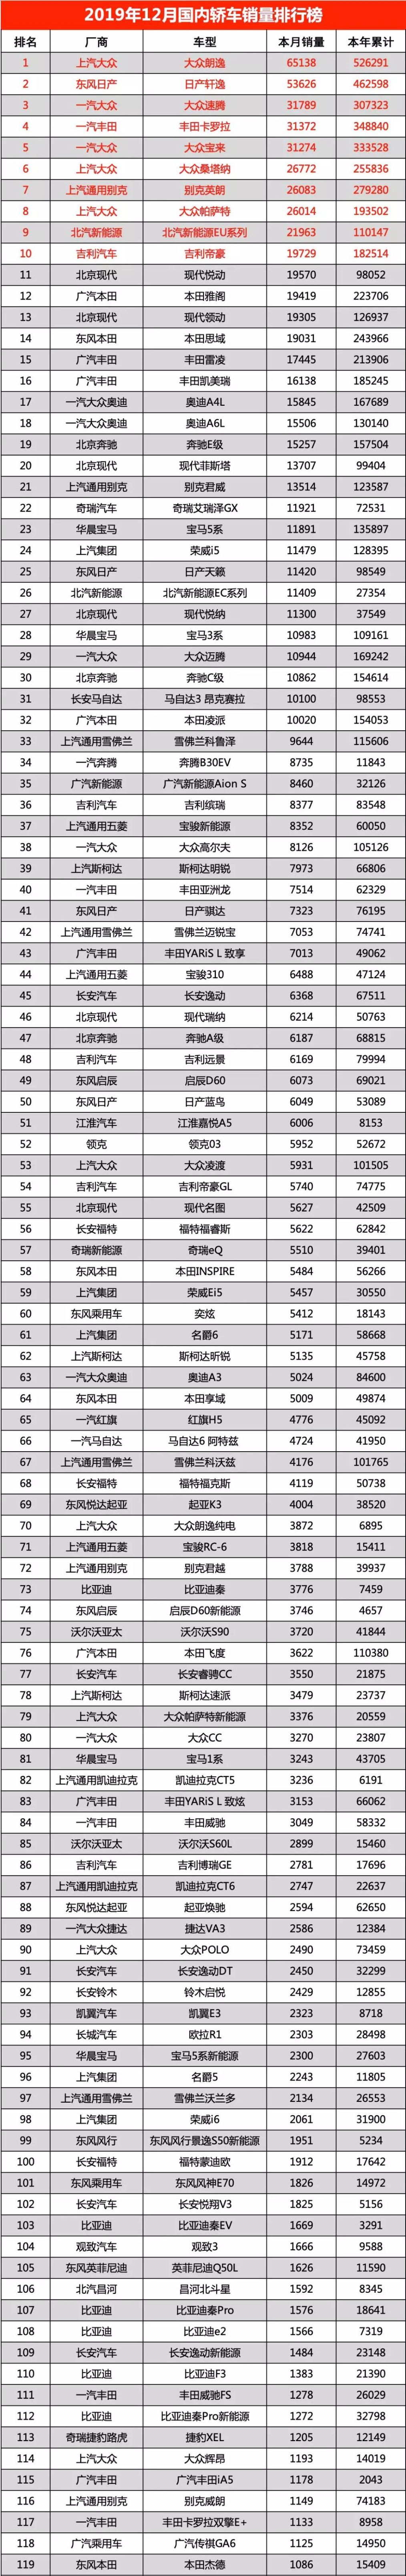 汽车销量排行榜大众_大众车辆销量排行_中国汽车销量排行榜12月